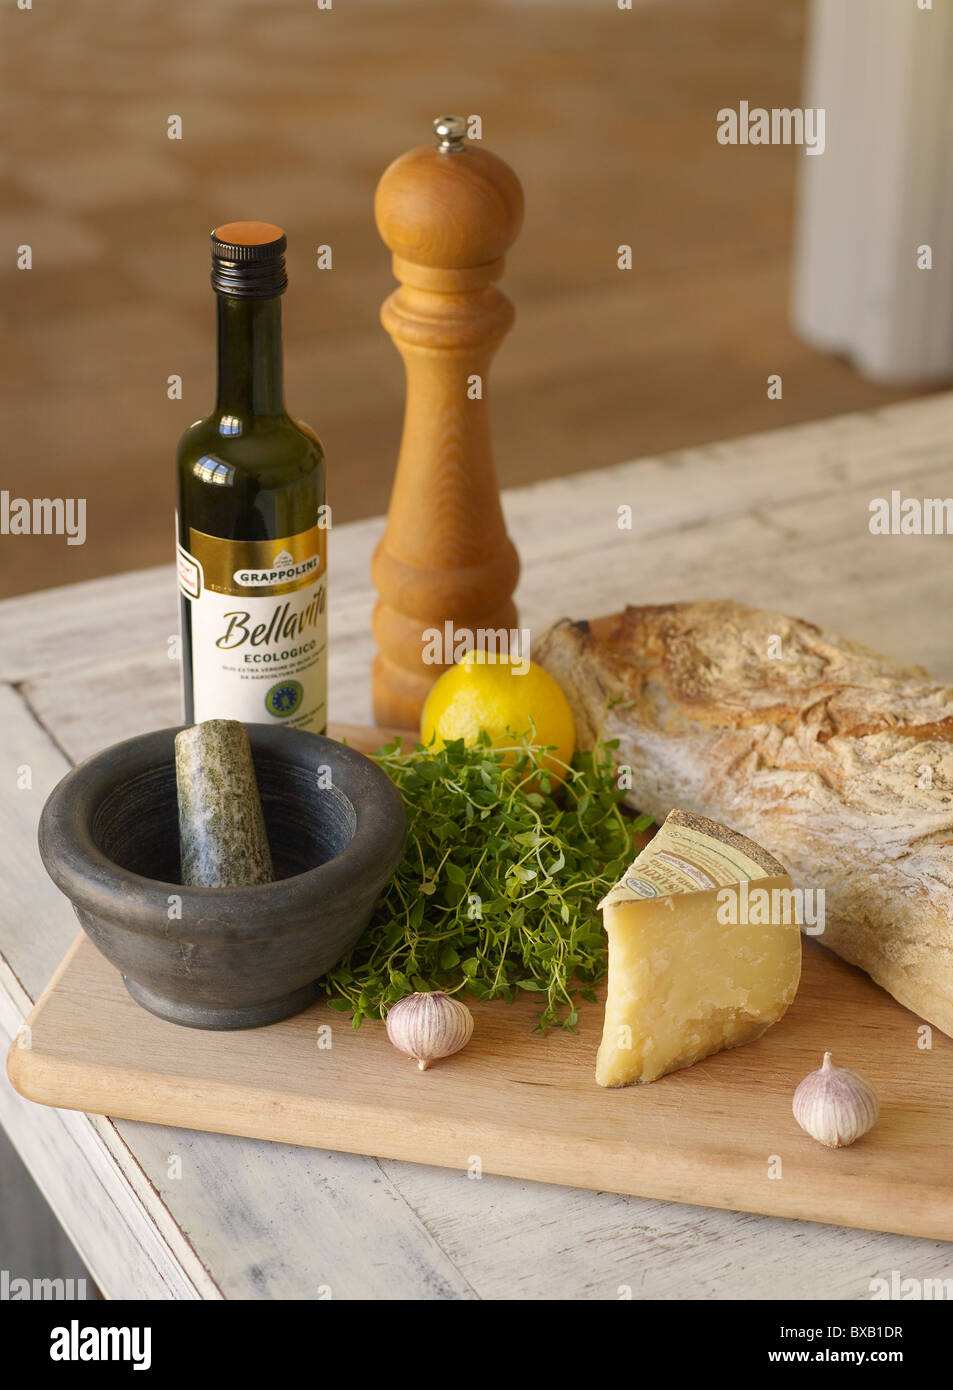 Pane, formaggio, olio e erbe sul tagliere Foto Stock